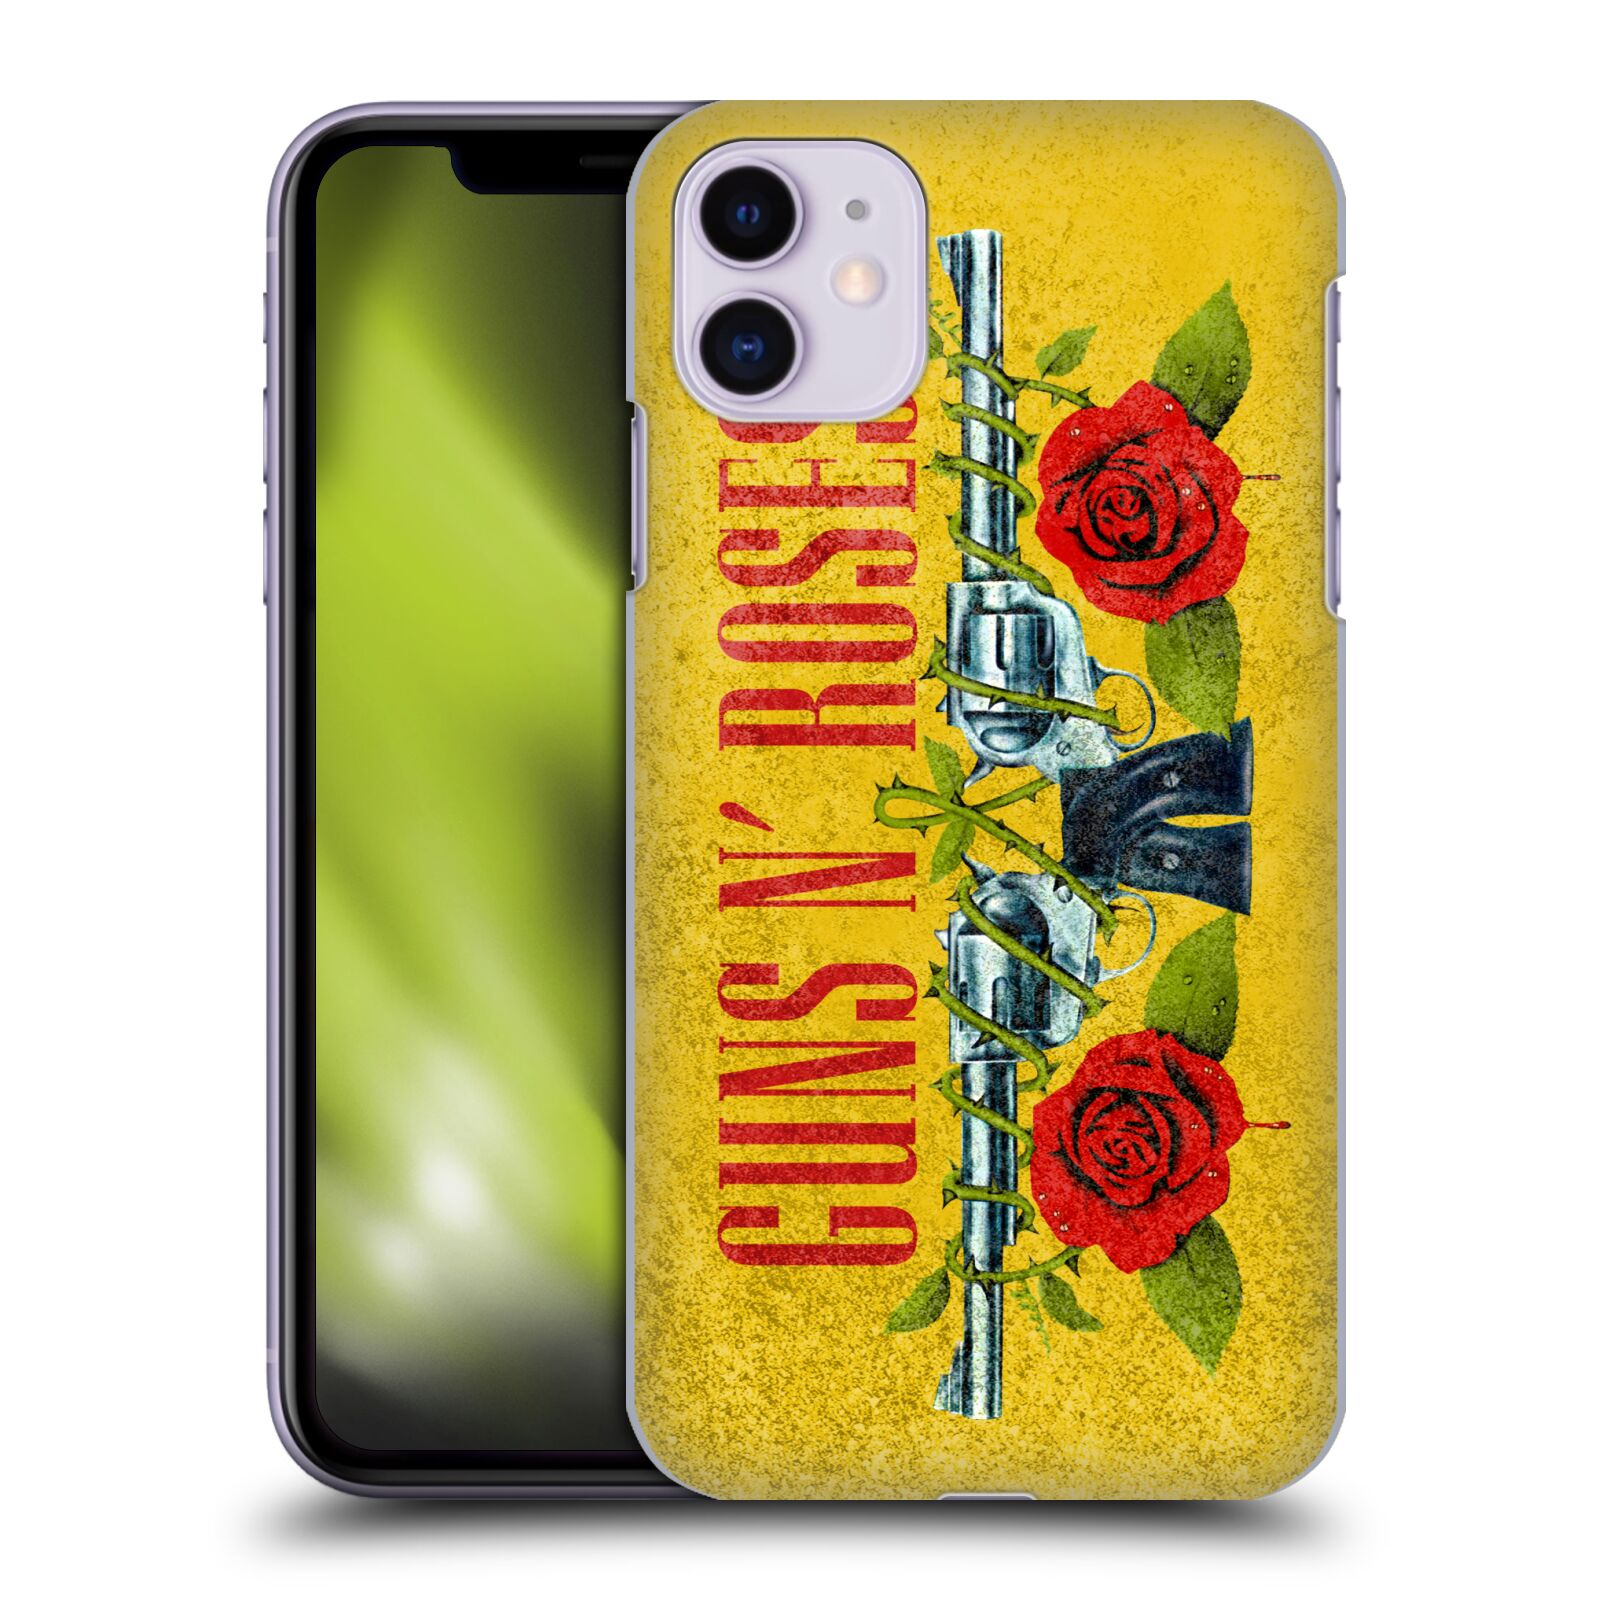 Pouzdro na mobil Apple Iphone 11 - HEAD CASE - hudební skupina Guns N Roses pistole a růže žluté pozadí